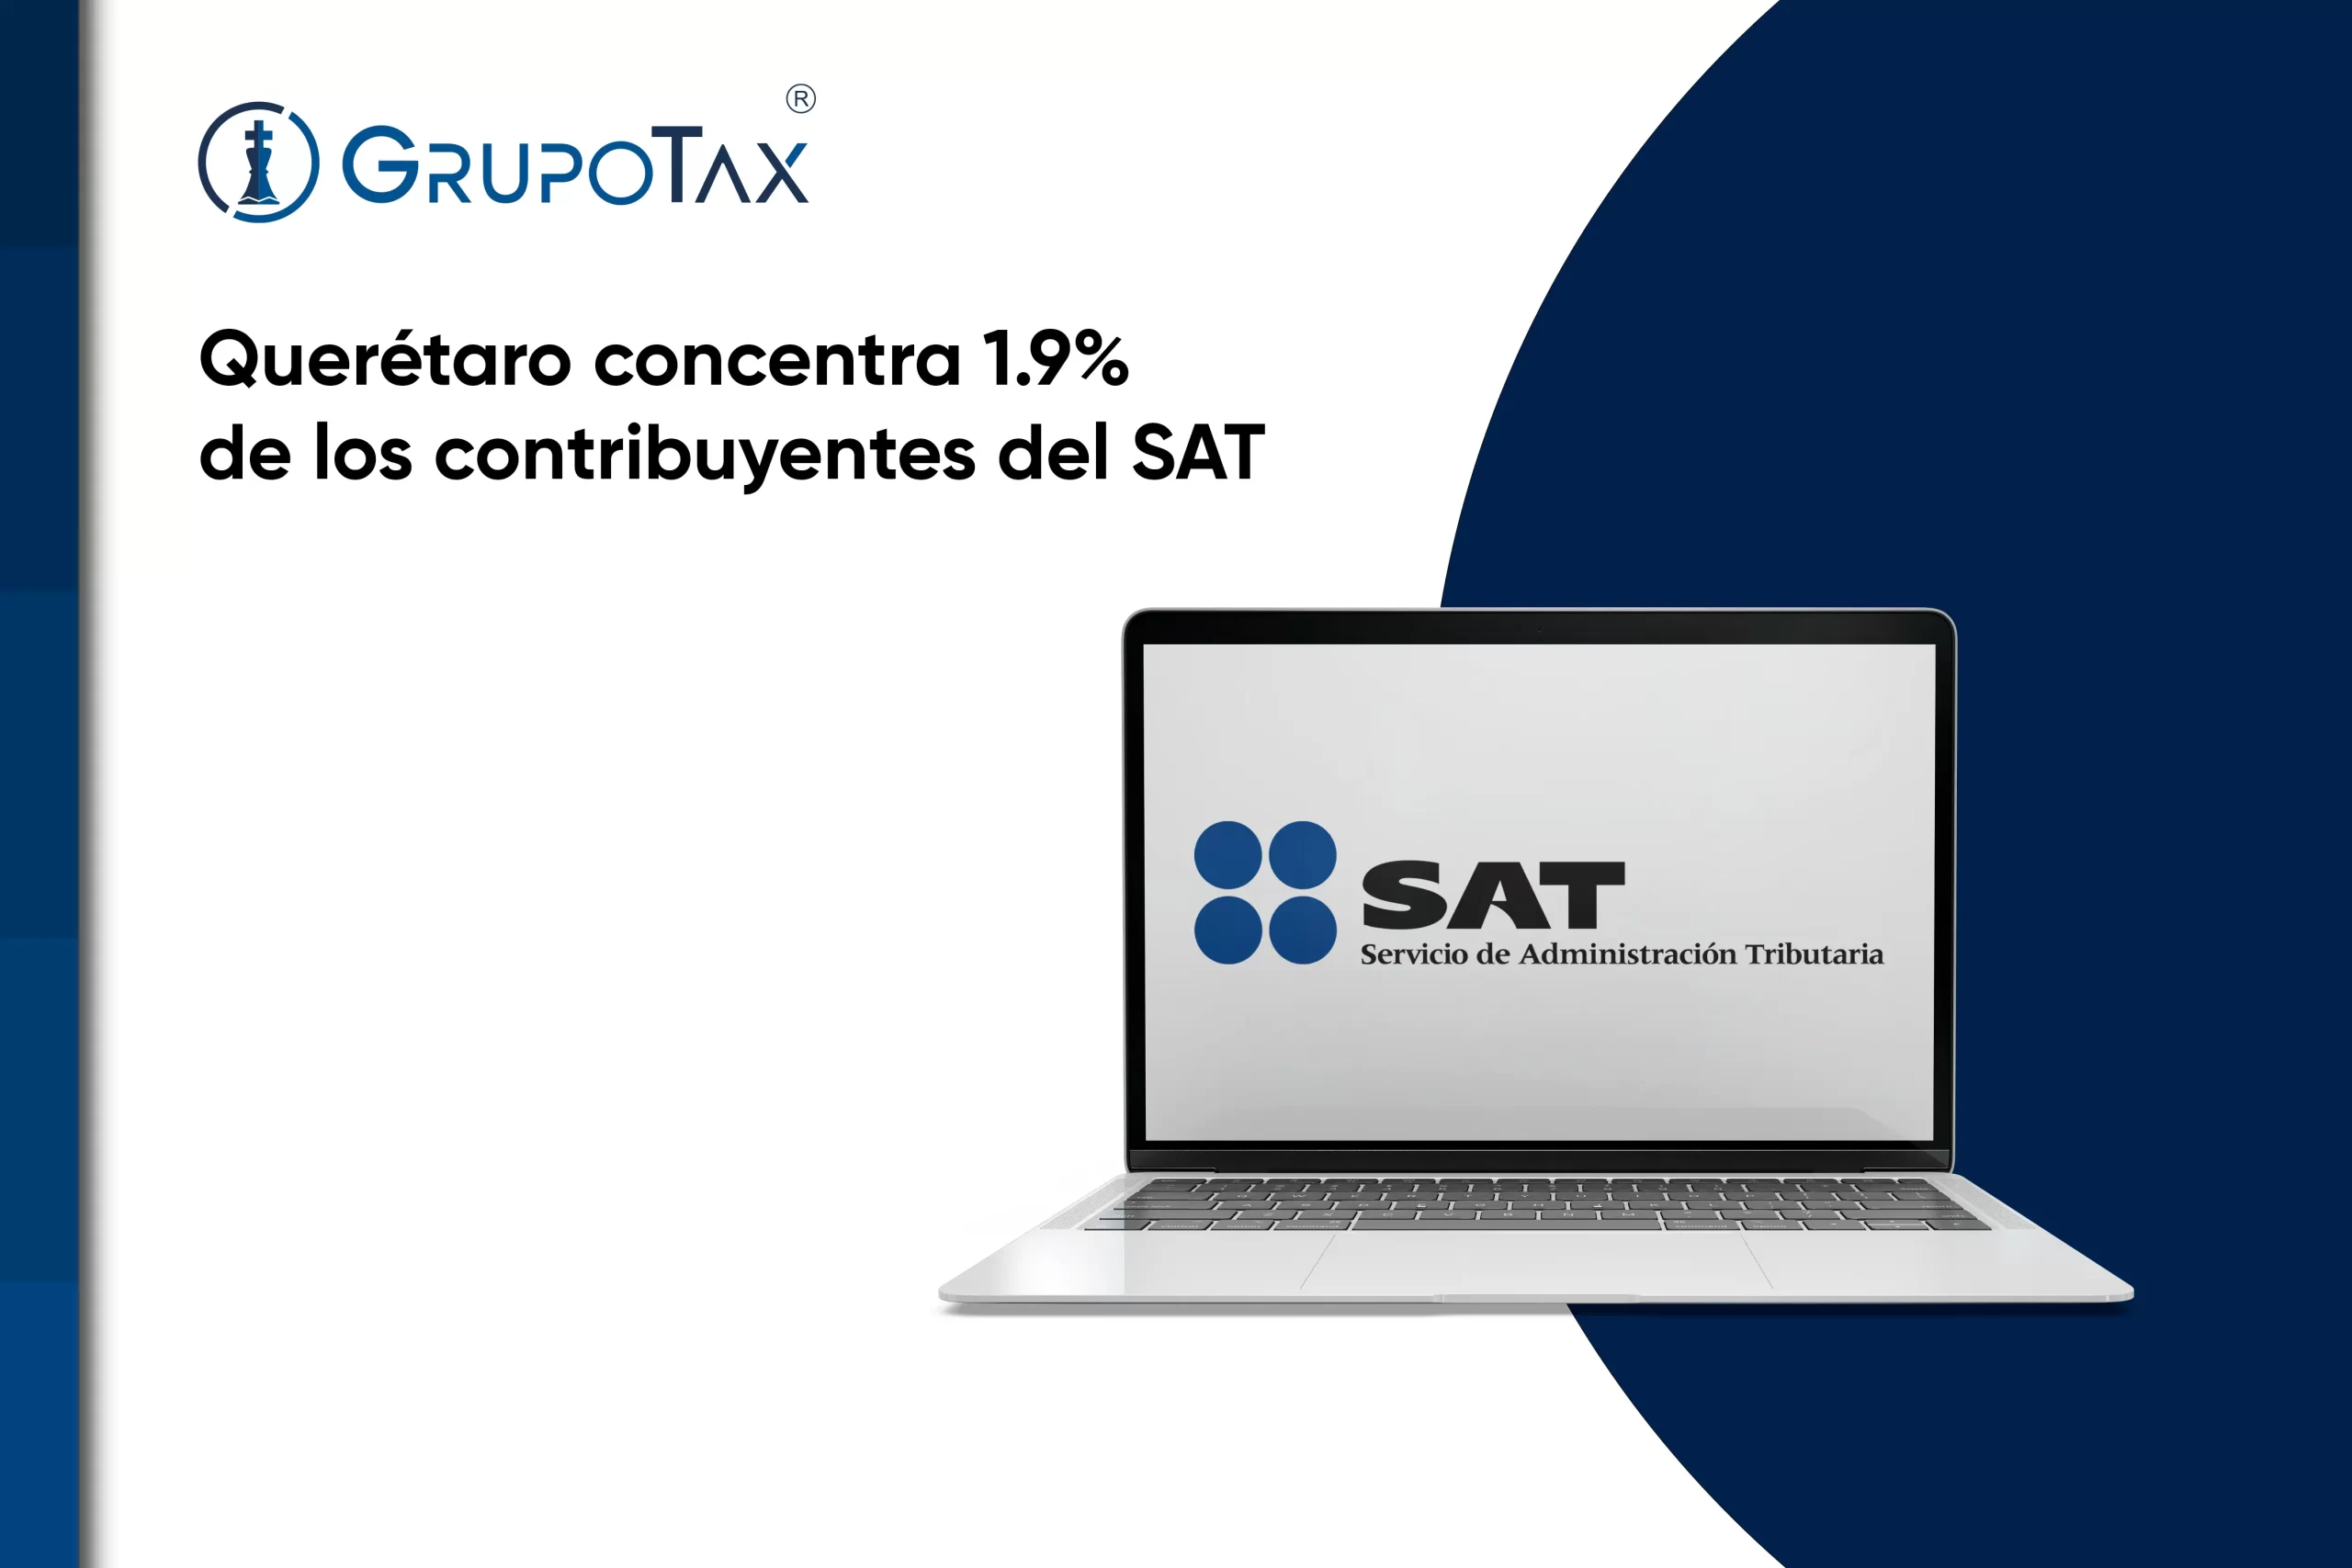 Querétaro concentra 1.9% de los contribuyentes del SAT